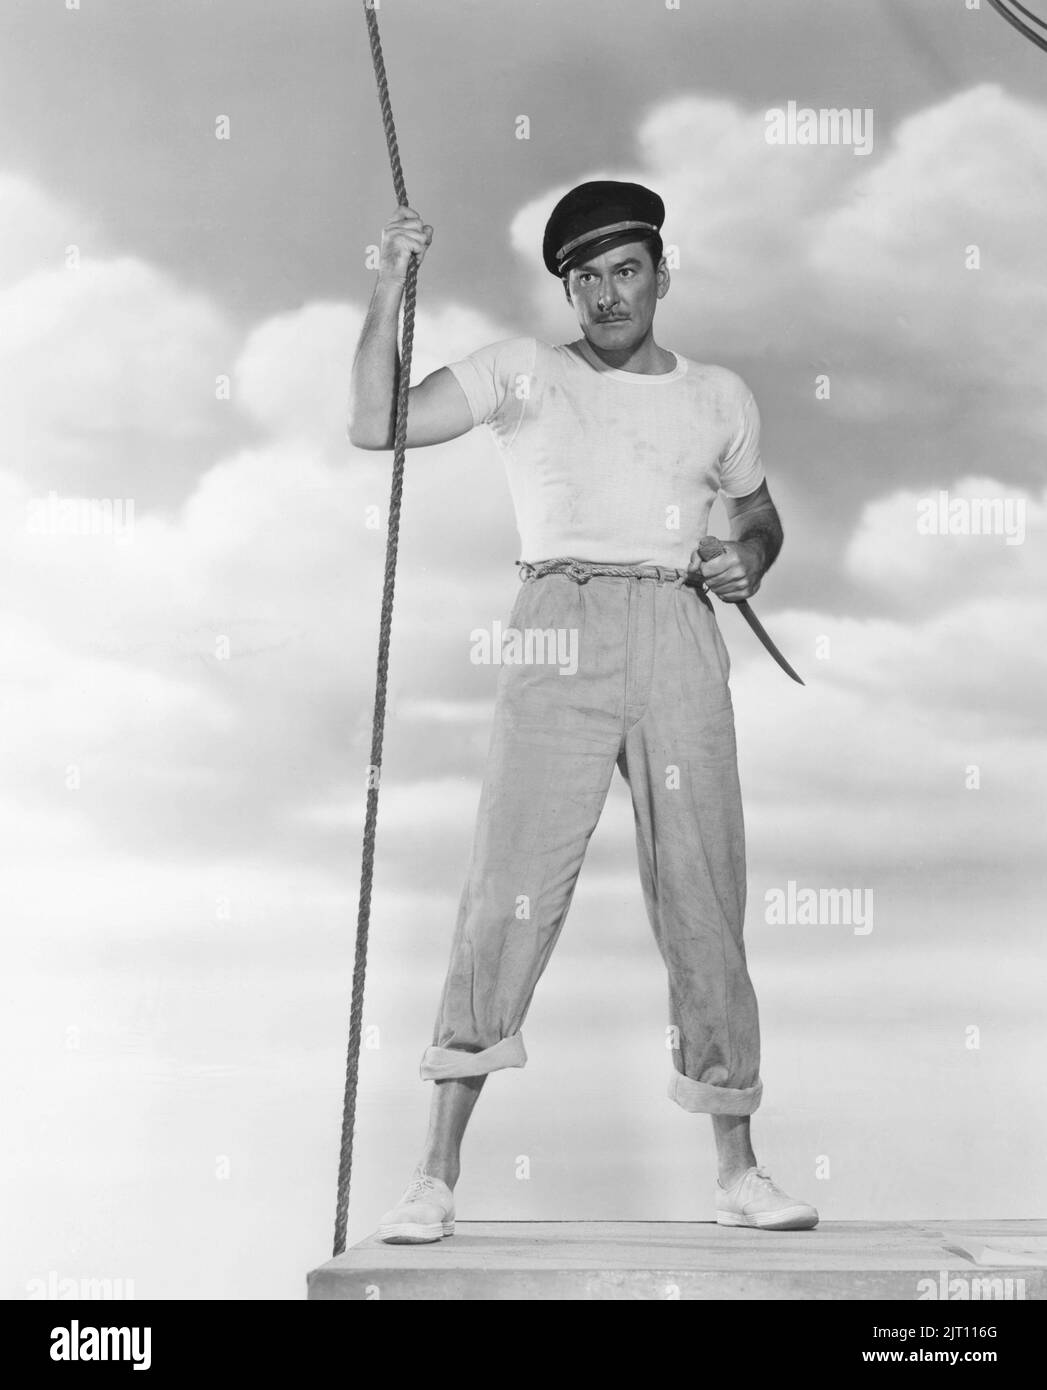 Errol Flynn. Australisch-amerikanischer Schauspieler. 20. juni 1909 - 14. oktober 1959. Während des Goldenen Zeitalters Hollywoods, das für seine romantischen Swashbuckler-Rollen bekannt ist, erlangte er weltweiten Ruhm. Abgebildet in der Hauptrolle im Film Adventures of Captain Fabian aus dem Jahr 1951. Stockfoto